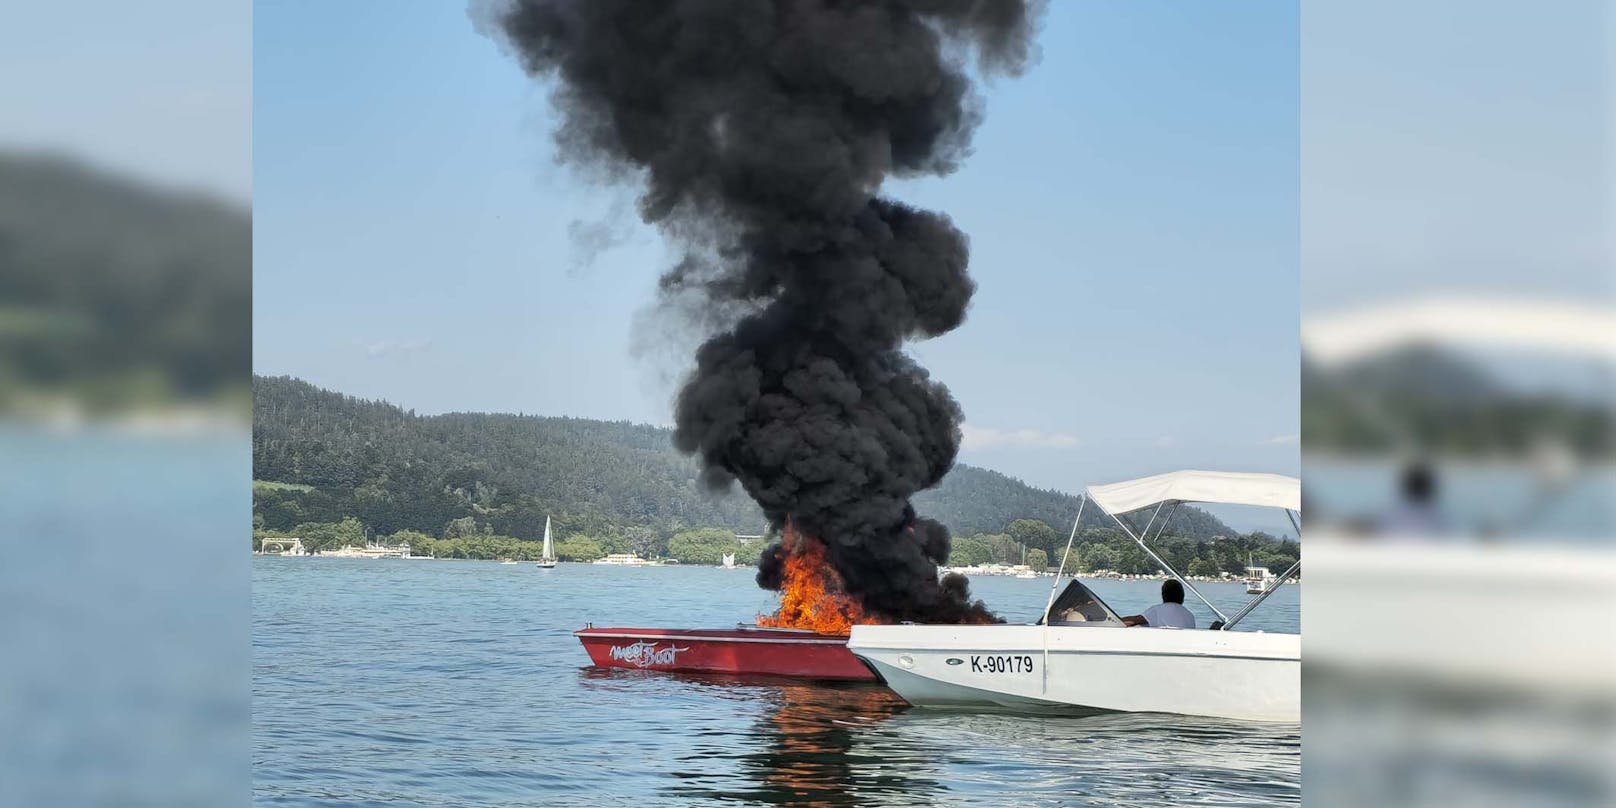 Urlauber leihen Boot am Wörthersee aus, dann brennt es